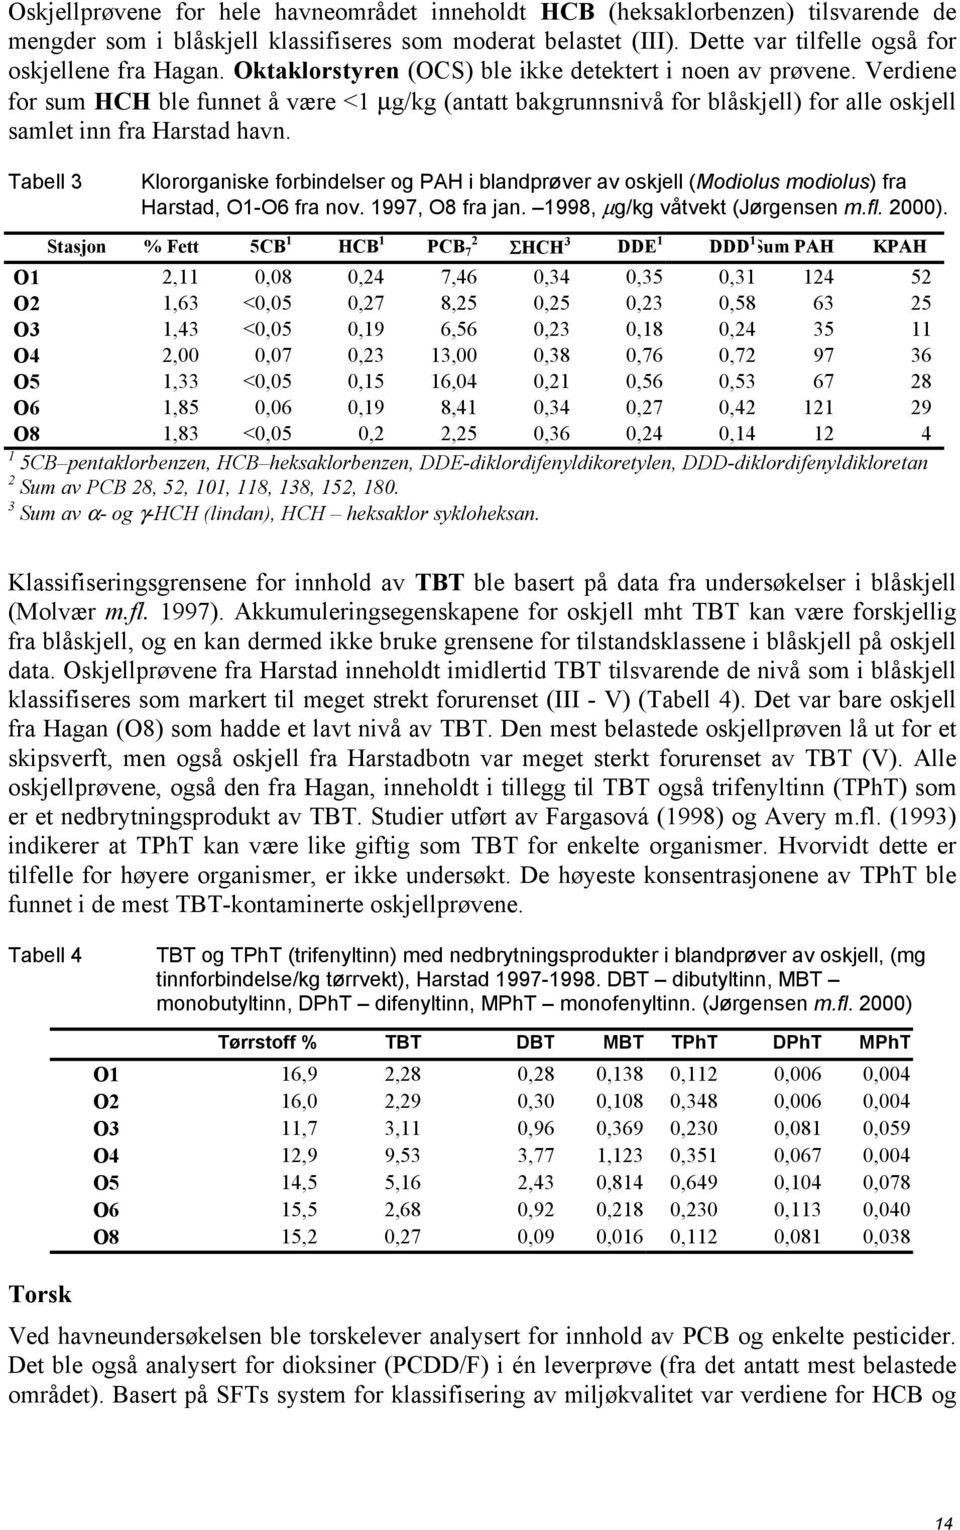 Tabell 3 Klororganiske forbindelser og PAH i blandprøver av oskjell (Modiolus modiolus) fra Harstad, O1-O6 fra nov. 1997, O8 fra jan. 1998, µg/kg våtvekt (Jørgensen m.fl. 2000).